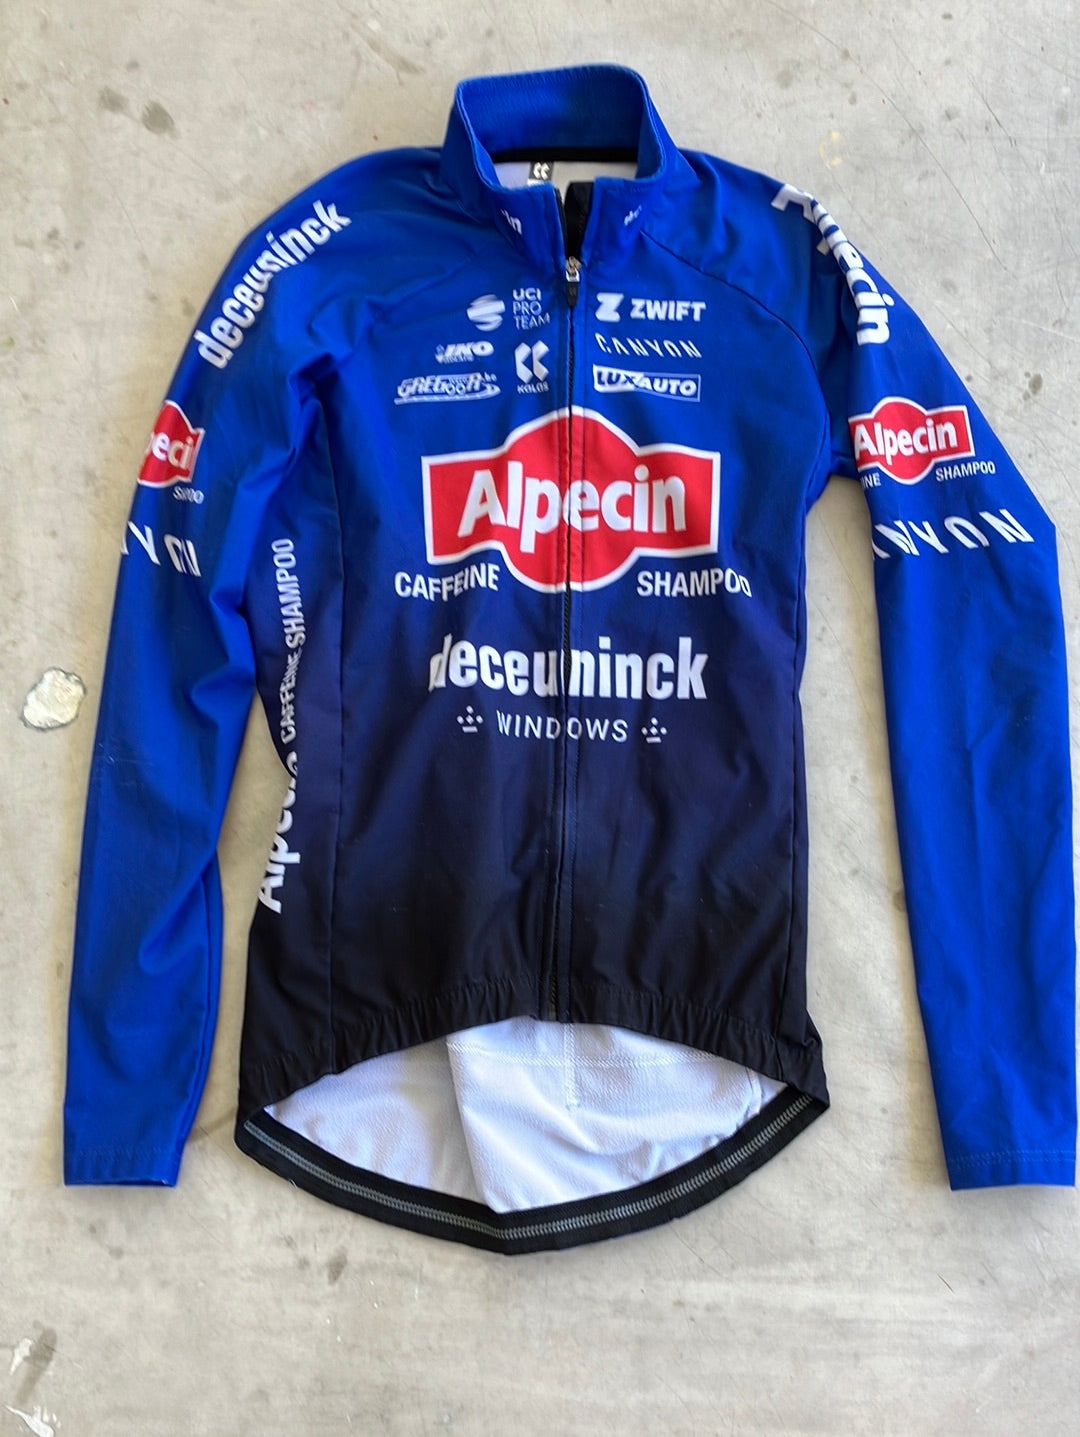 Winter Jersey - Thermal Jacket/Jersey | Kalas | Alpecin Deceuninck | Pro Cycling Kit